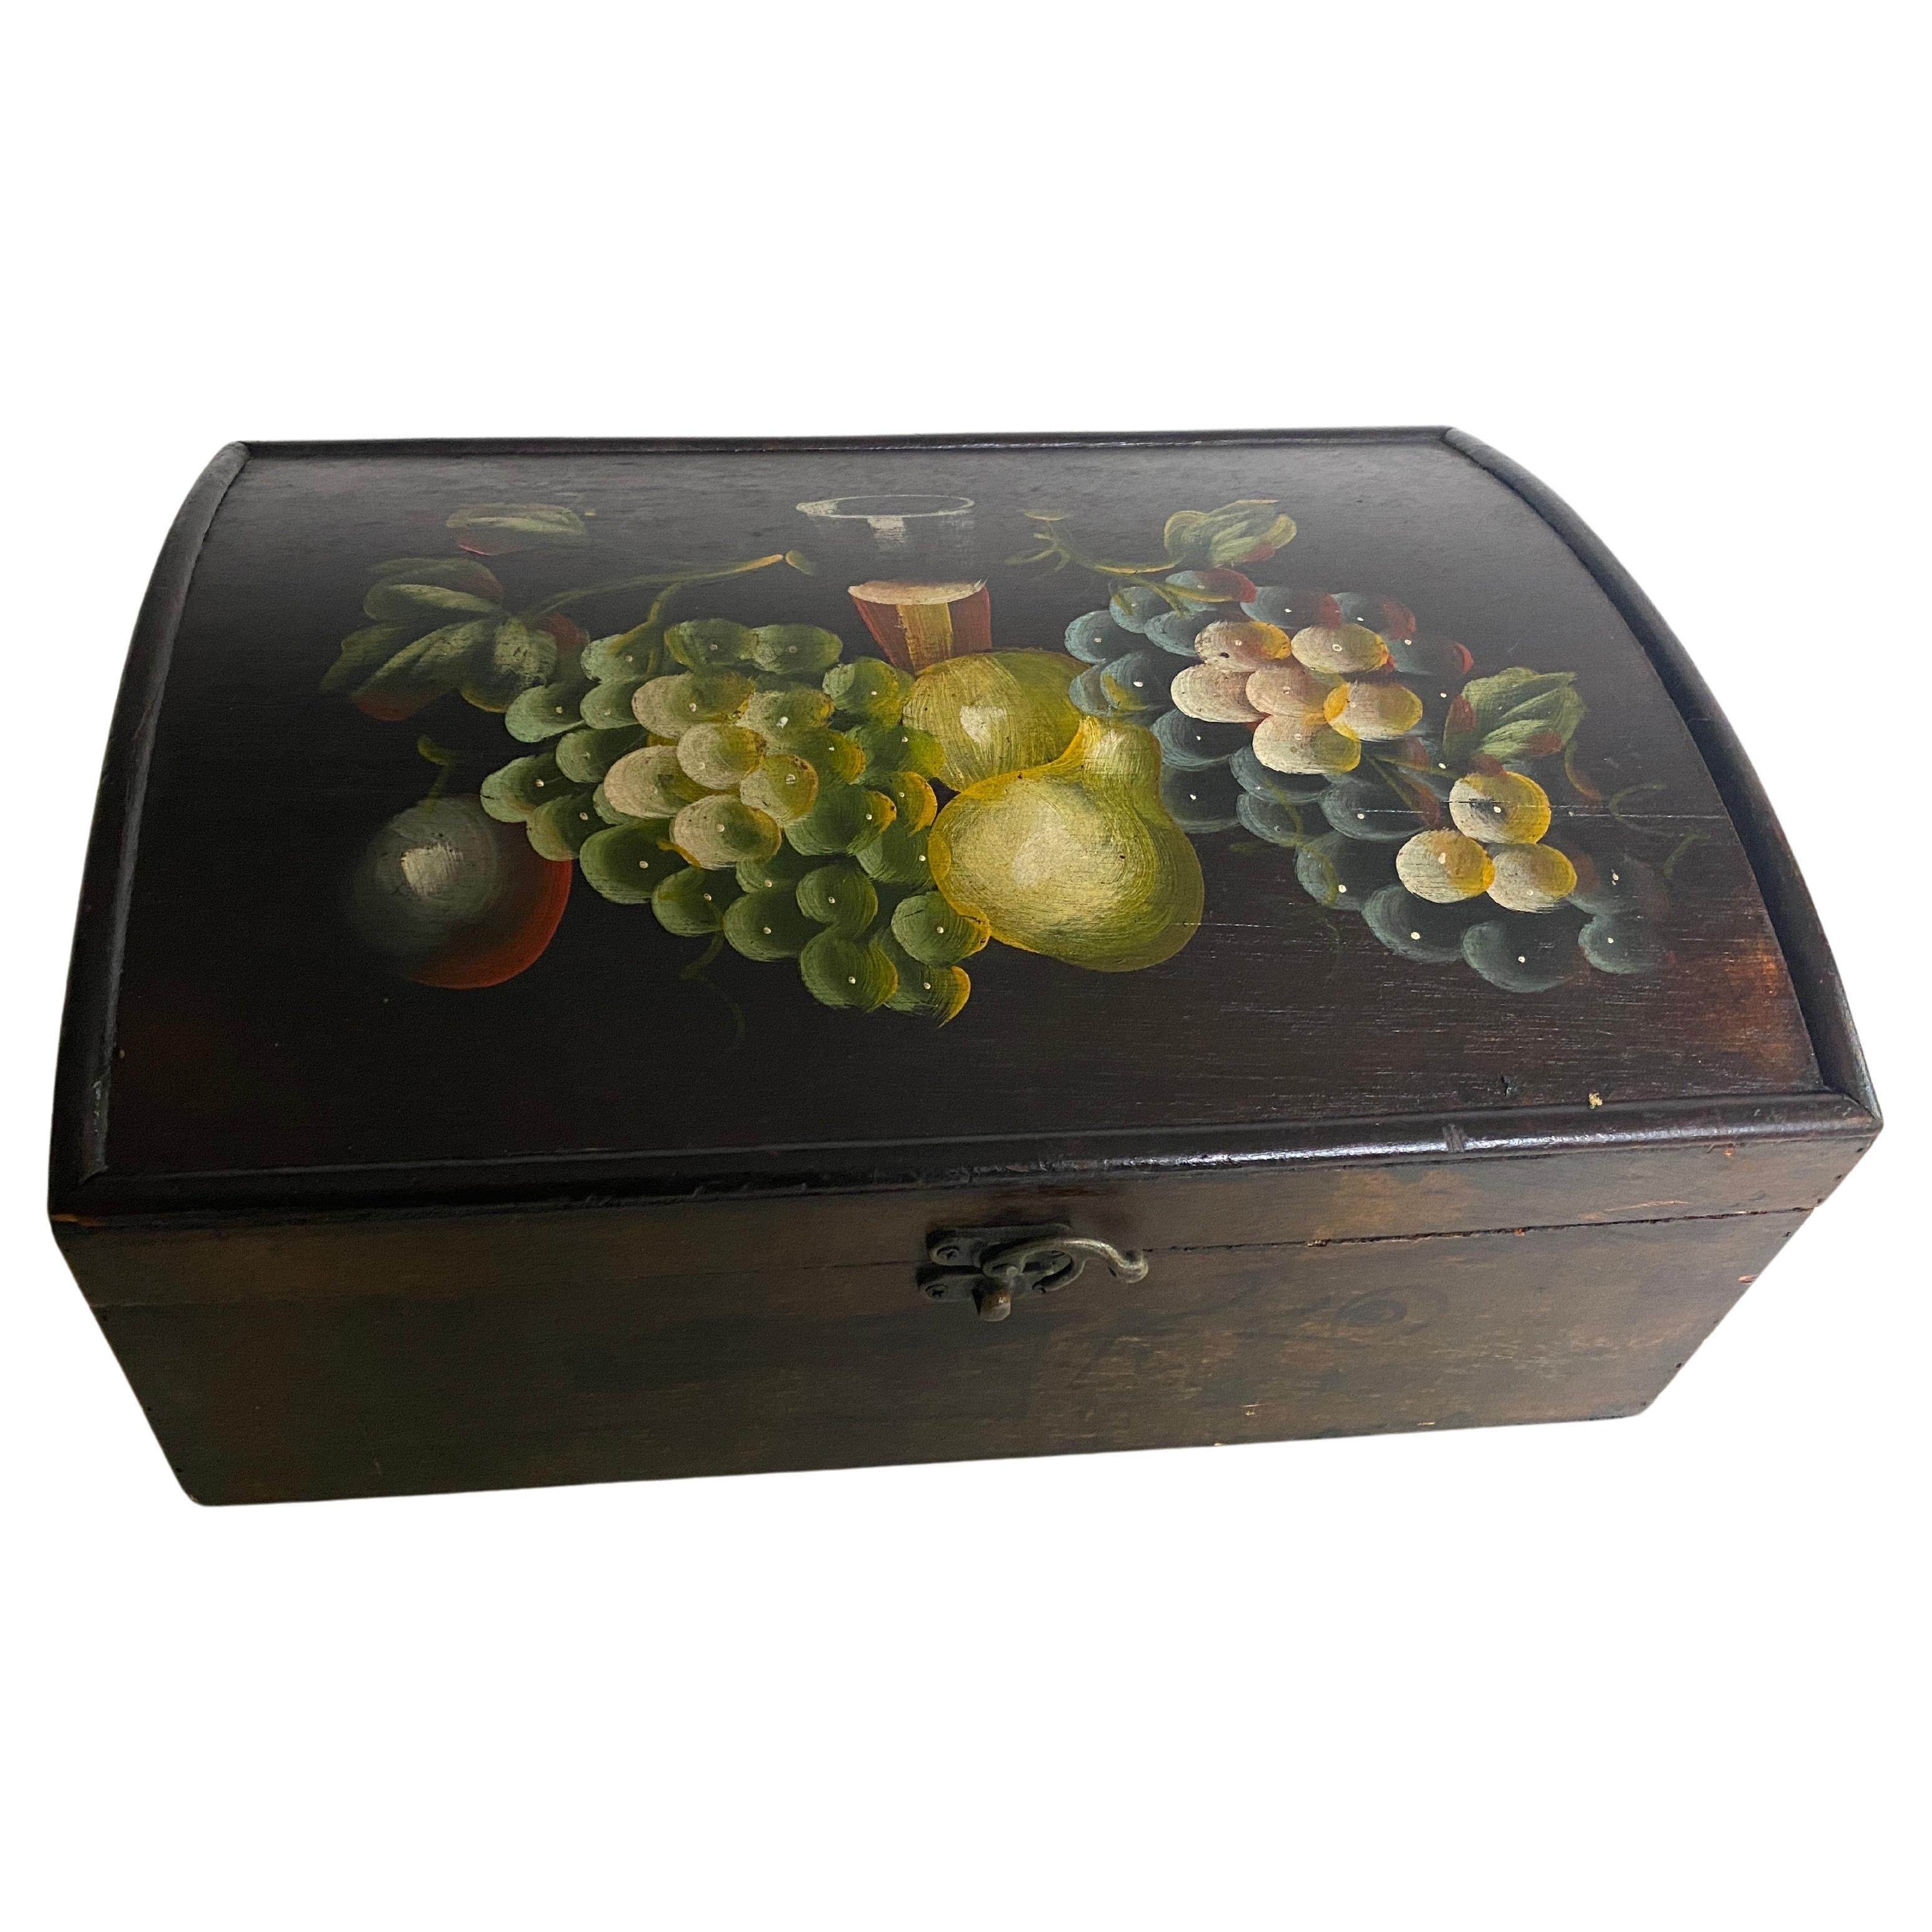 Cette grande boîte est une boîte à bijoux ou une boîte décorative. Il a été fabriqué au 20e siècle, en Angleterre. Son couvercle est en bois, de couleur verte et brune.